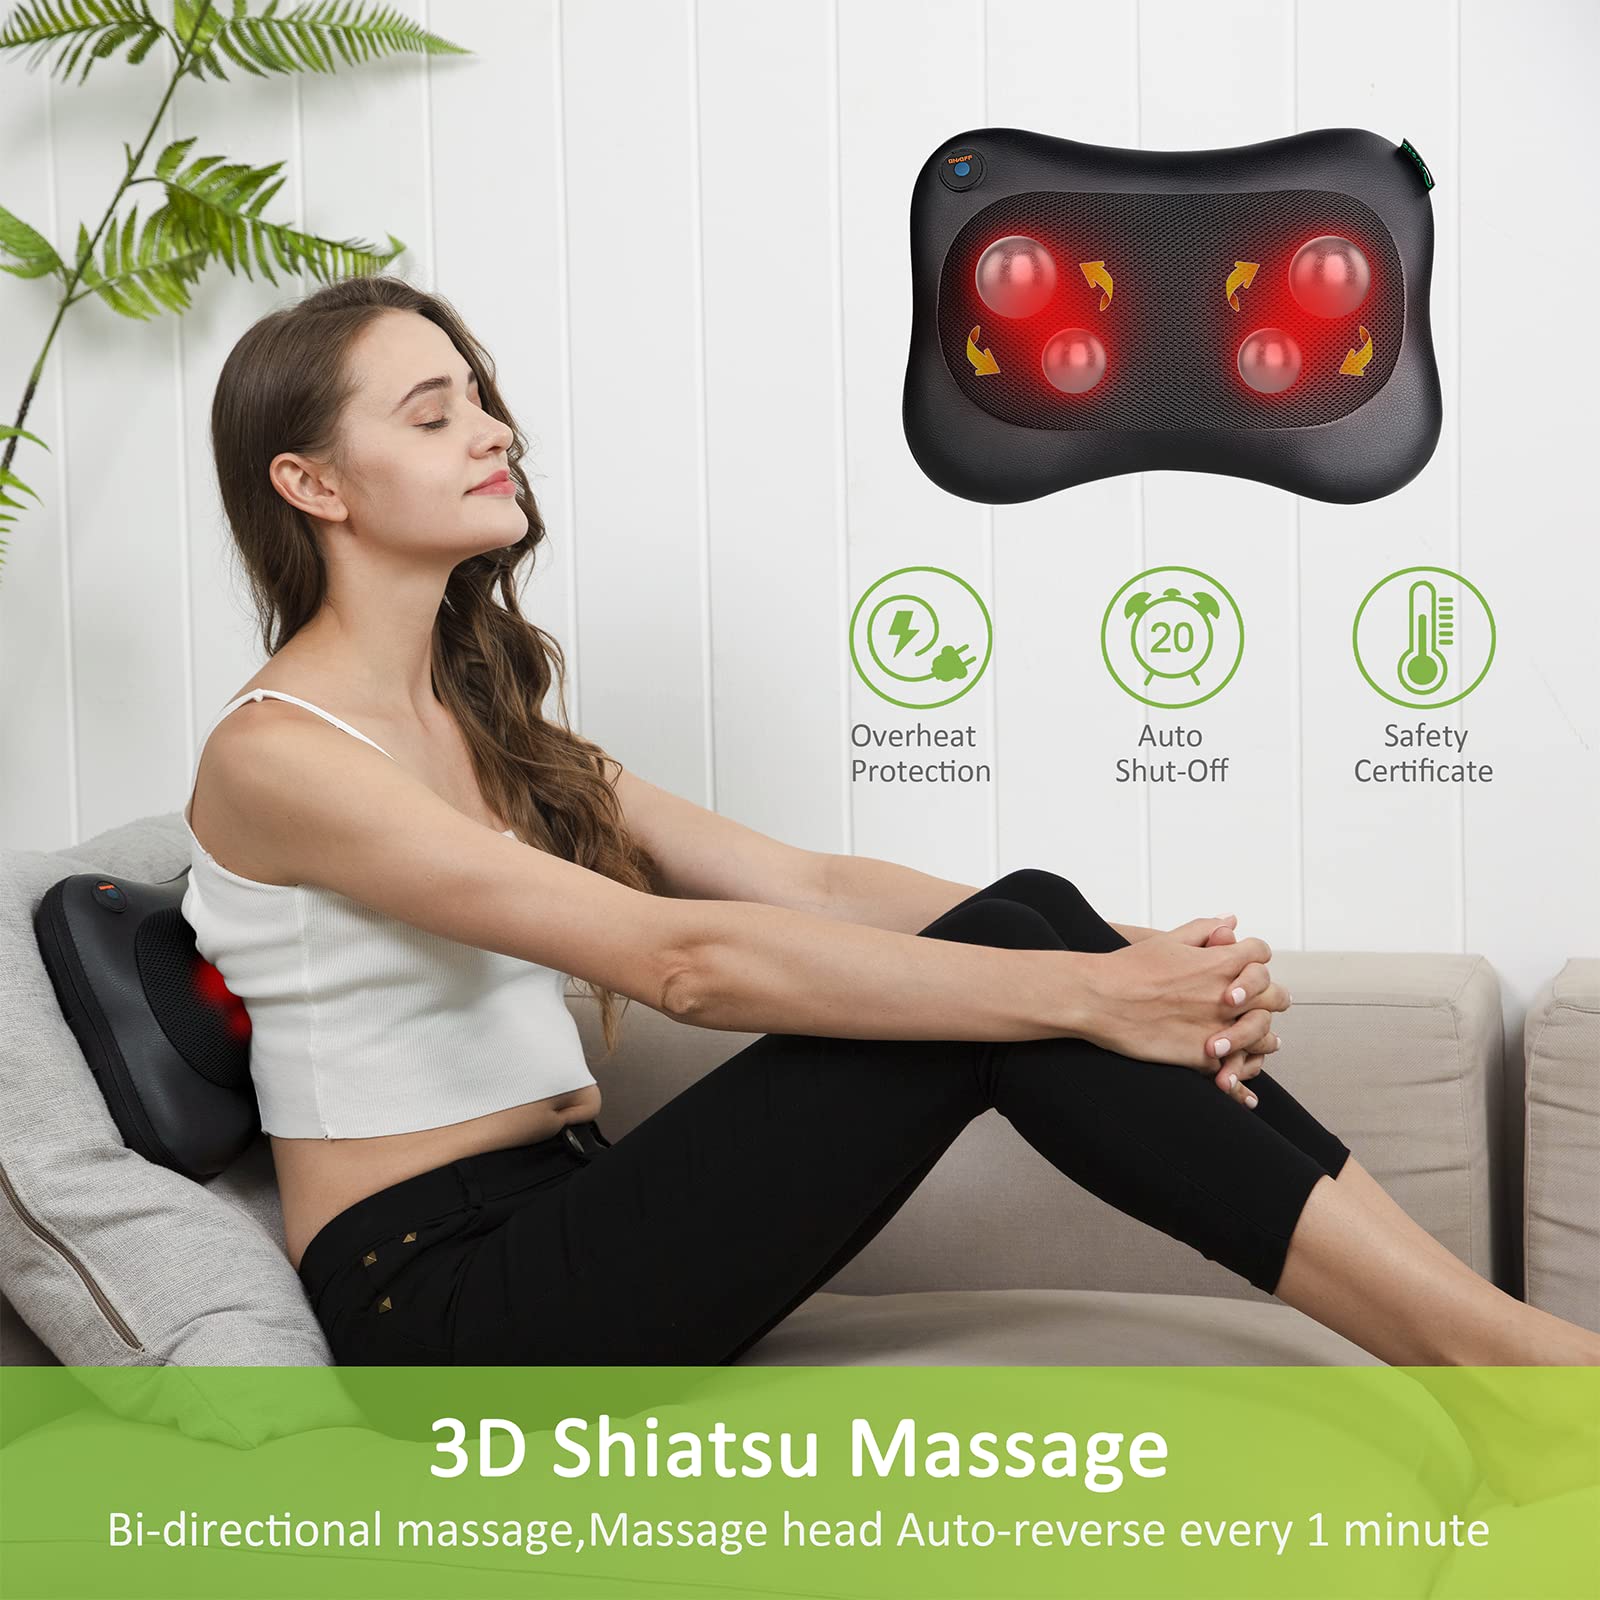 Cotsoco Shiatsu Massage Cushion with Heat, Full Back Massager with